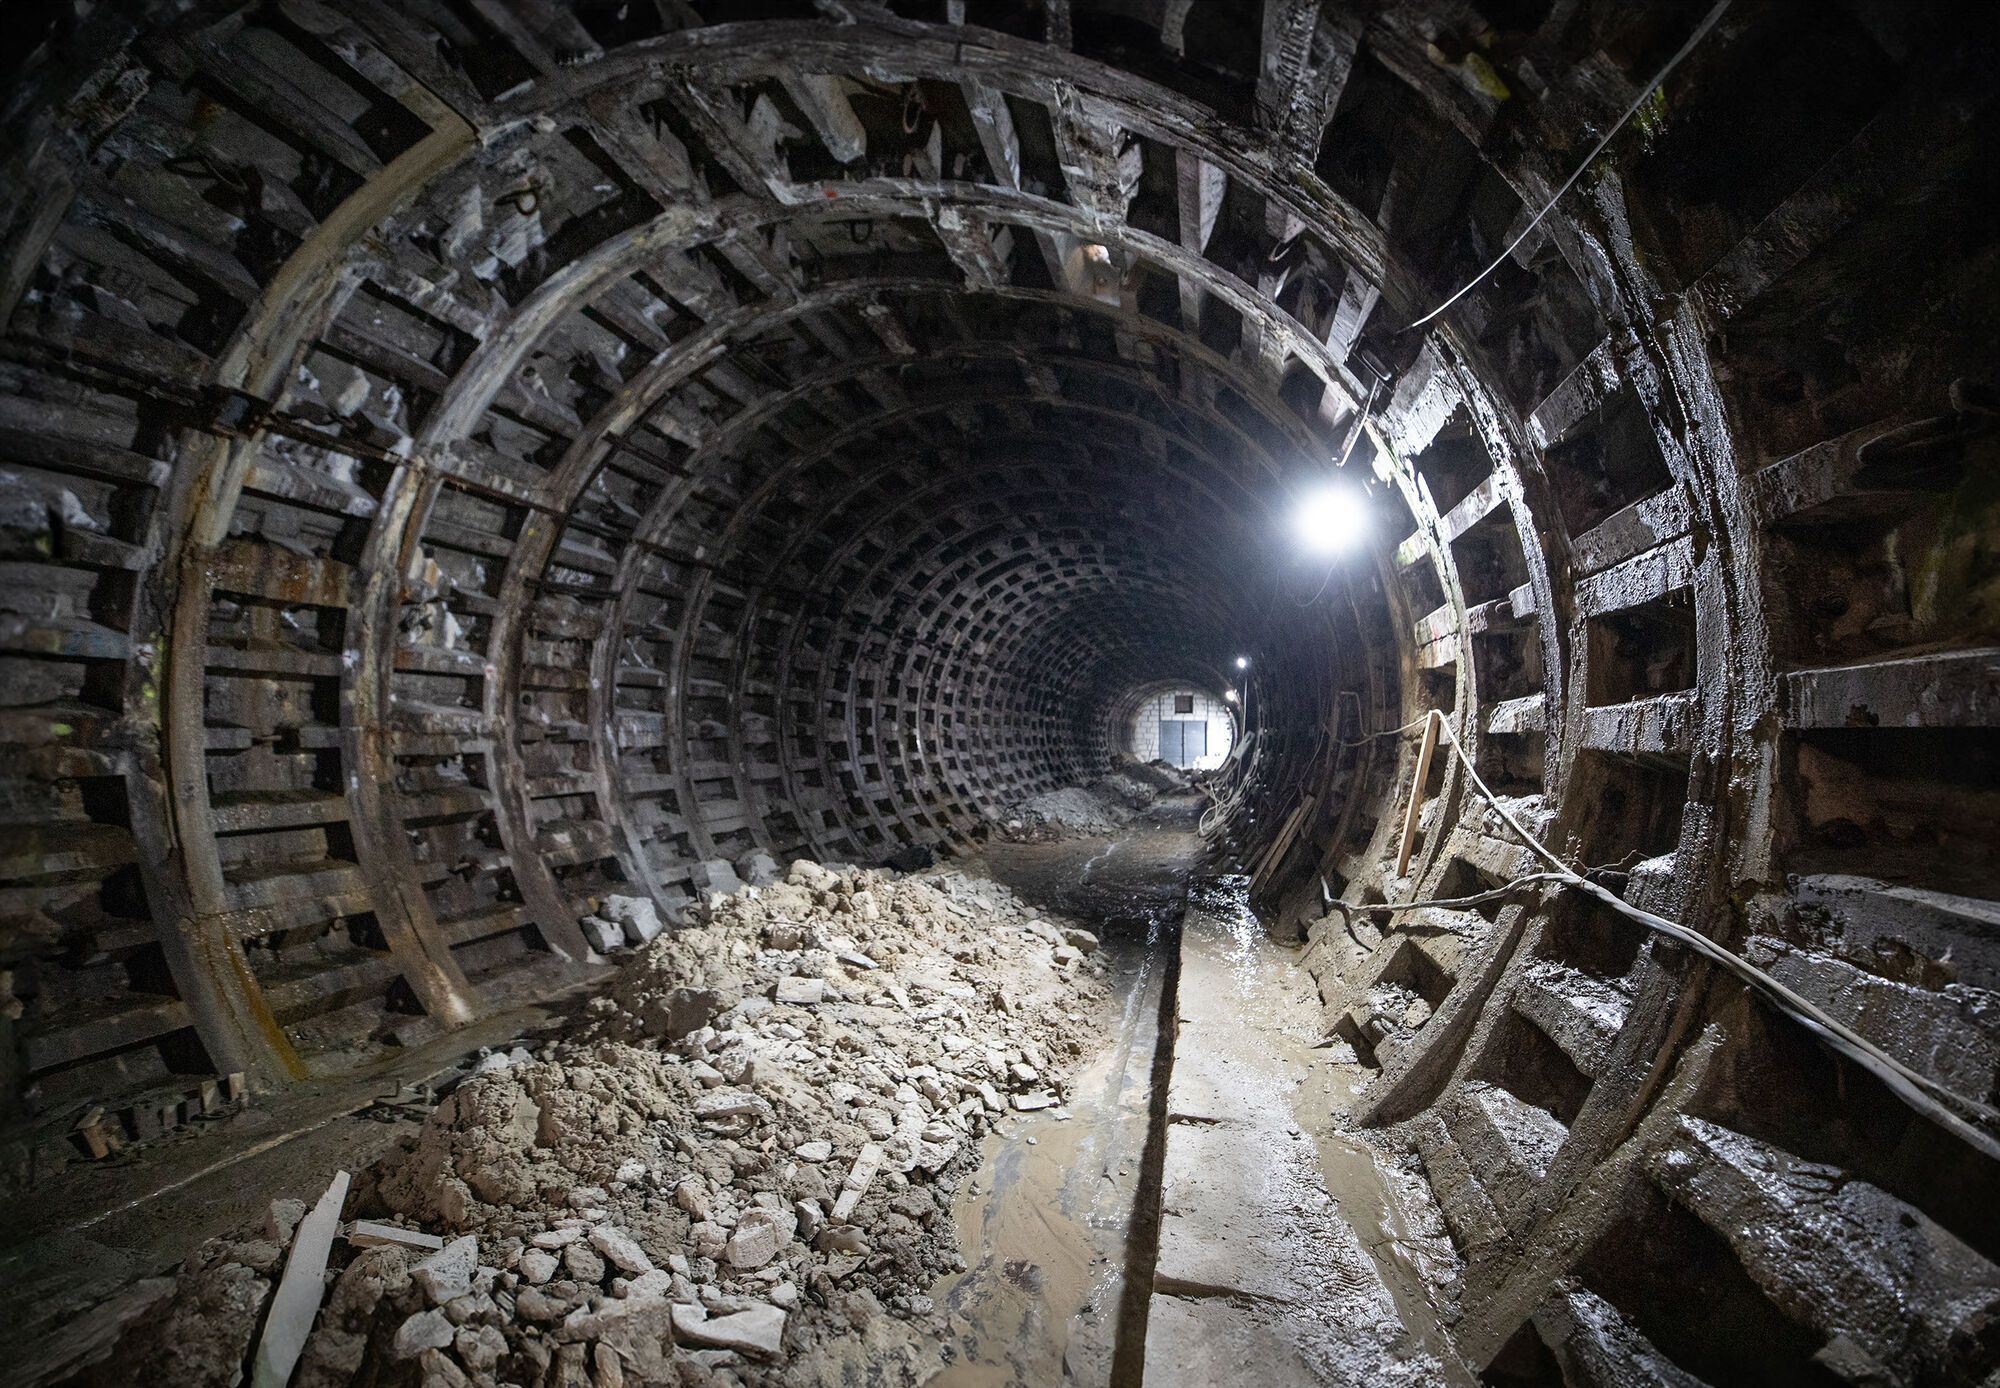 Почали демонтаж тюбінгів: у КМДА показали, як ремонтують тунель між станціями "Деміївська" і "Либідська". Фото і відео